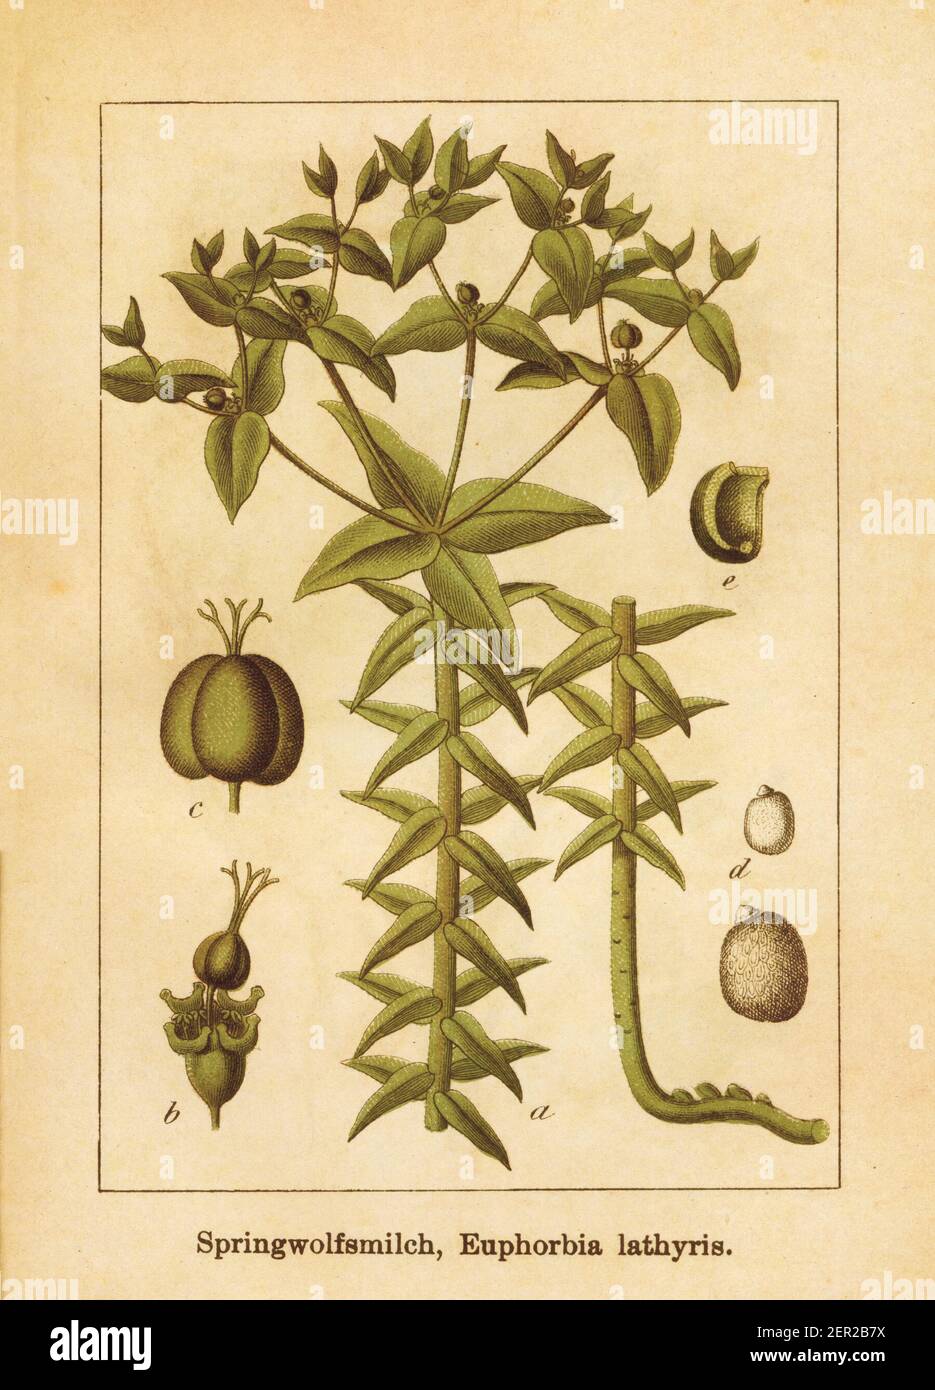 Illustration antique d'un euphorbia lathyris, également connu sous le nom de spherte, spherte de papier, spherte de gopher, plante de gopher ou plante de mole. Gravé par Jacob Banque D'Images